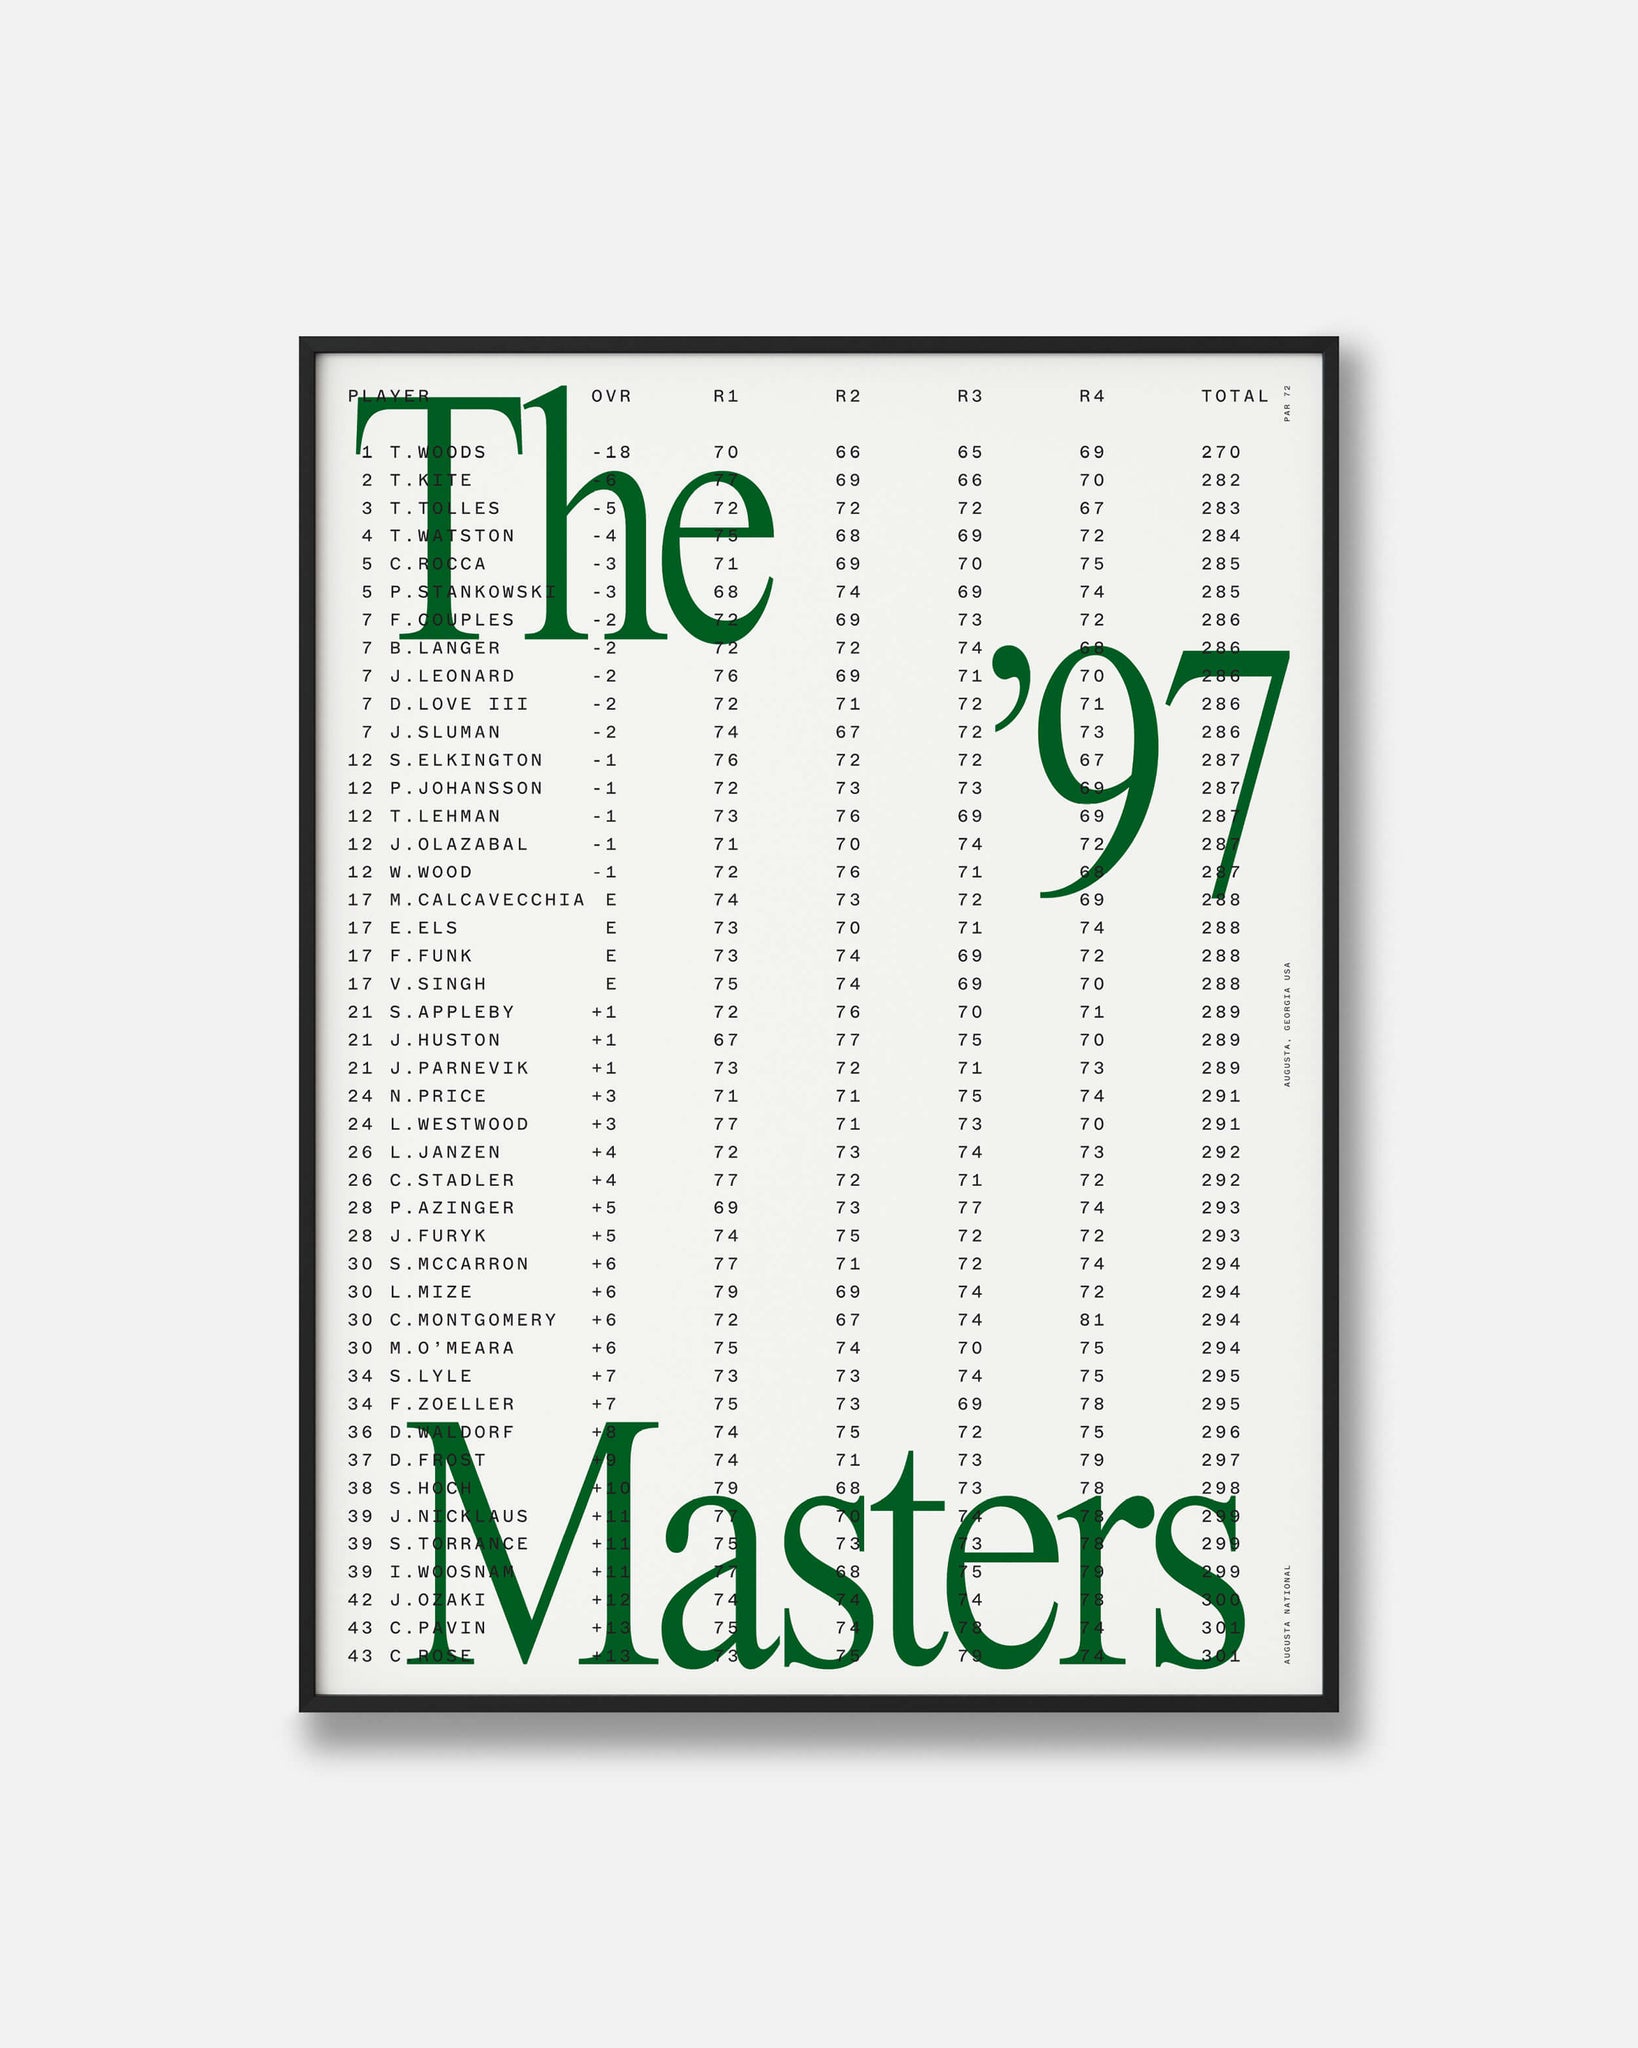 TW 1997 Masters